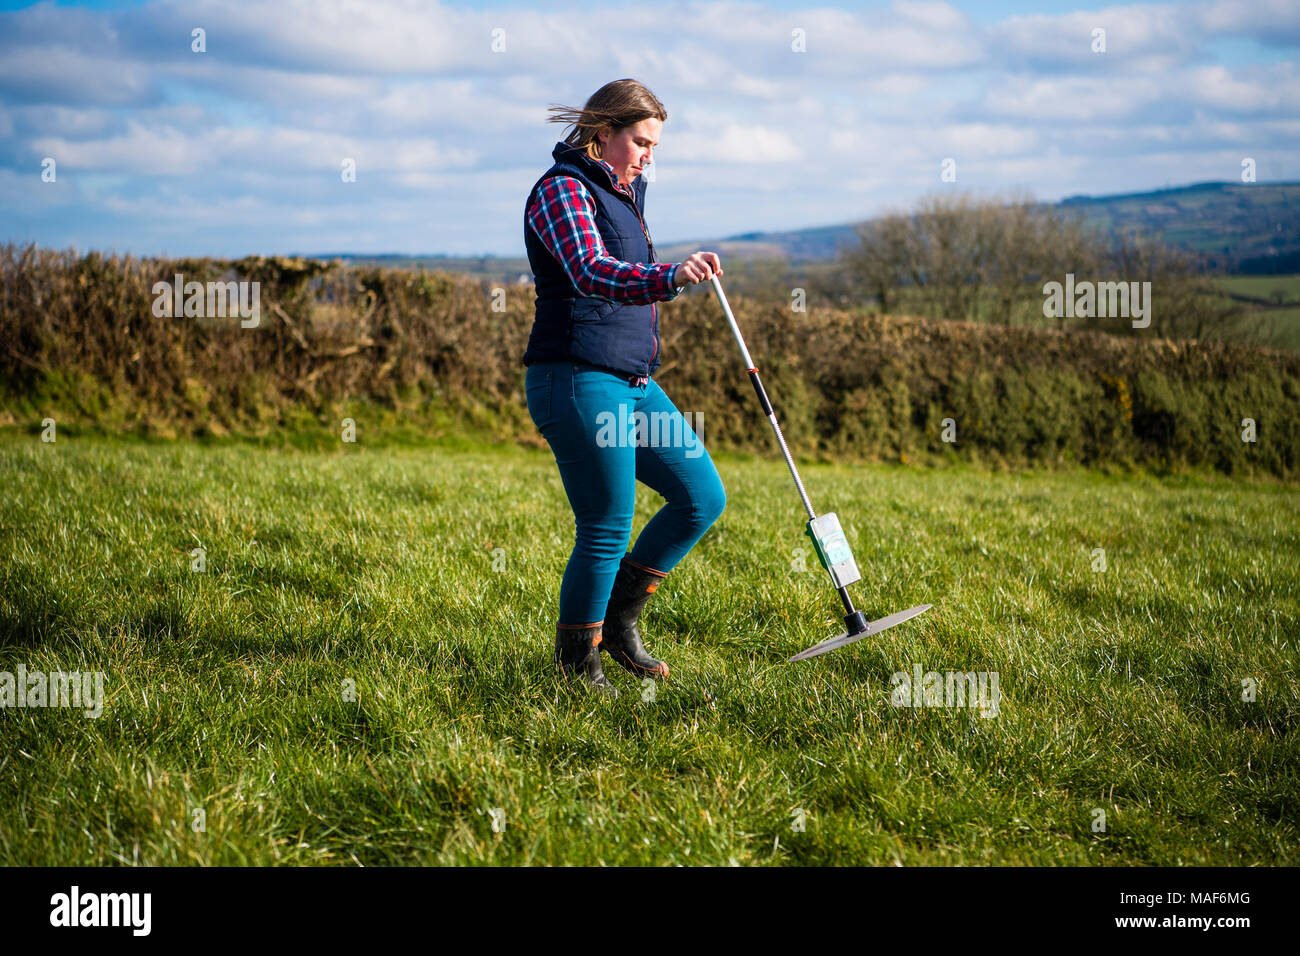 Jamie McCoy , imprenditore, utilizzando una piastra il multimetro per misurare la crescita di erba di pascolo in un campo per la sua azienda agricola nelle zone rurali West Wales UK Foto Stock